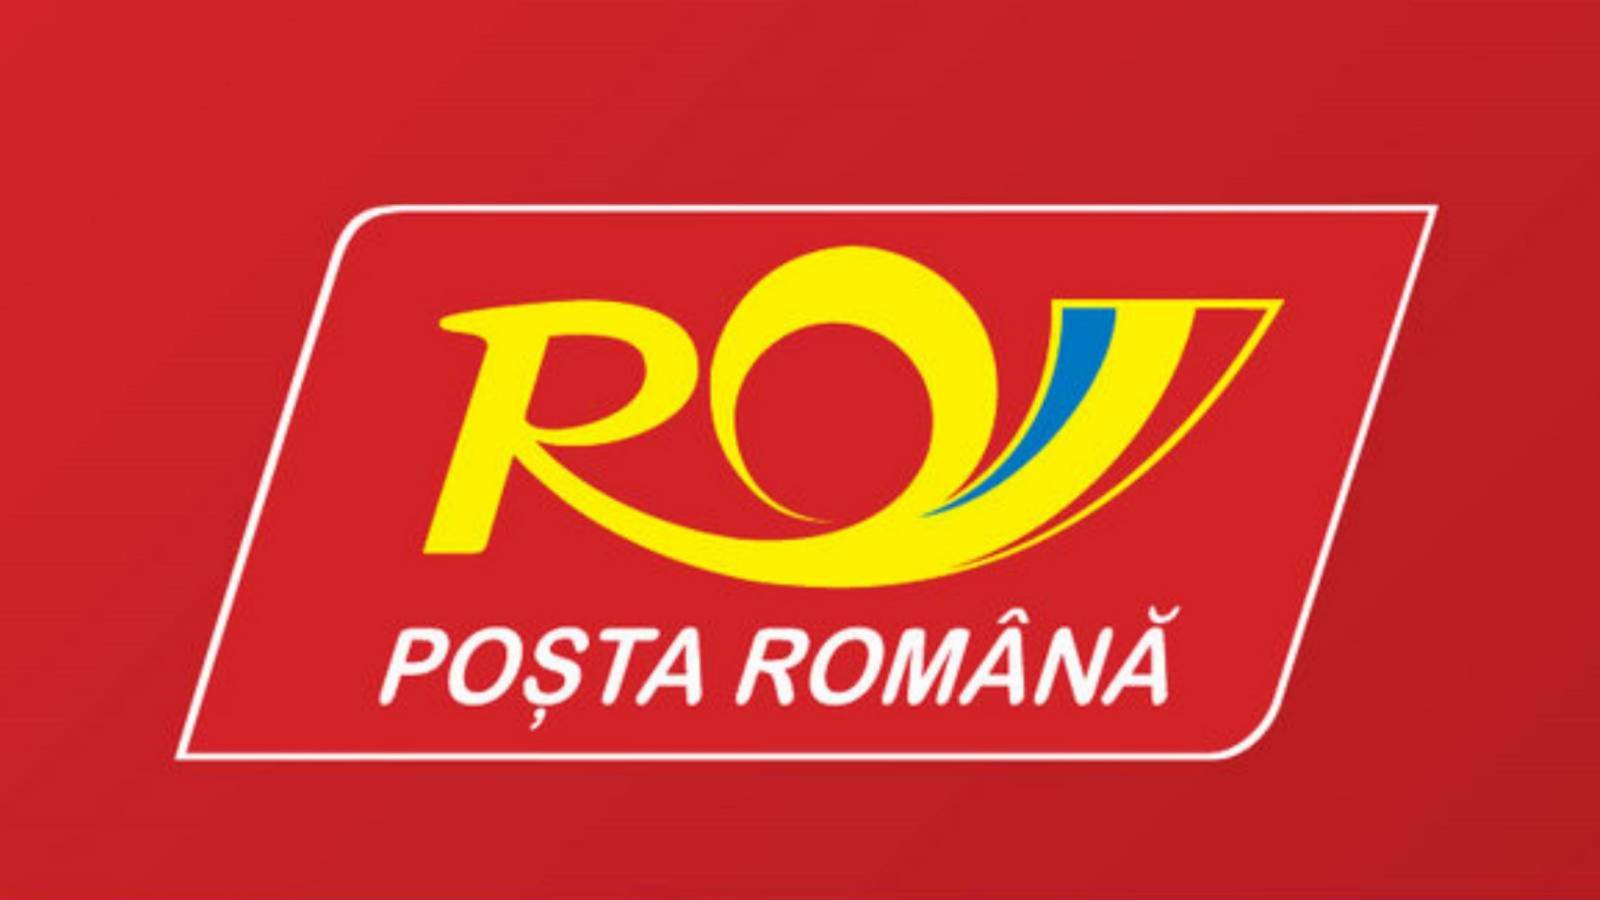 Assurance colis de la poste roumaine